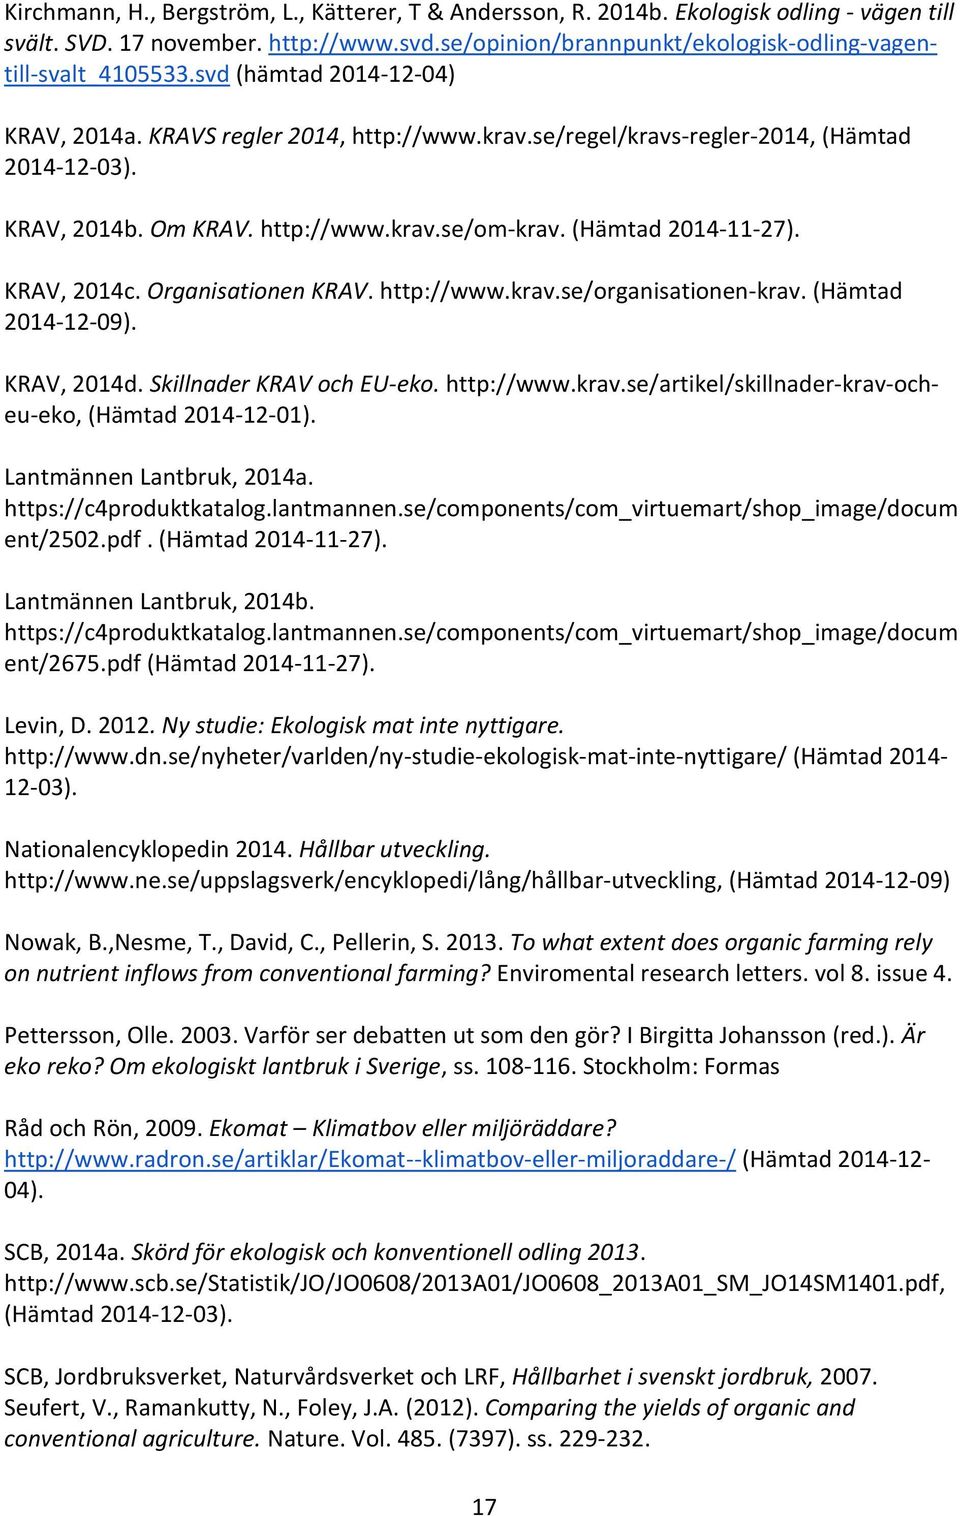 KRAV, 2014c. Organisationen KRAV. http://www.krav.se/organisationen-krav. (Hämtad 2014-12-09). KRAV, 2014d. Skillnader KRAV och EU-eko. http://www.krav.se/artikel/skillnader-krav-ocheu-eko, (Hämtad 2014-12-01).